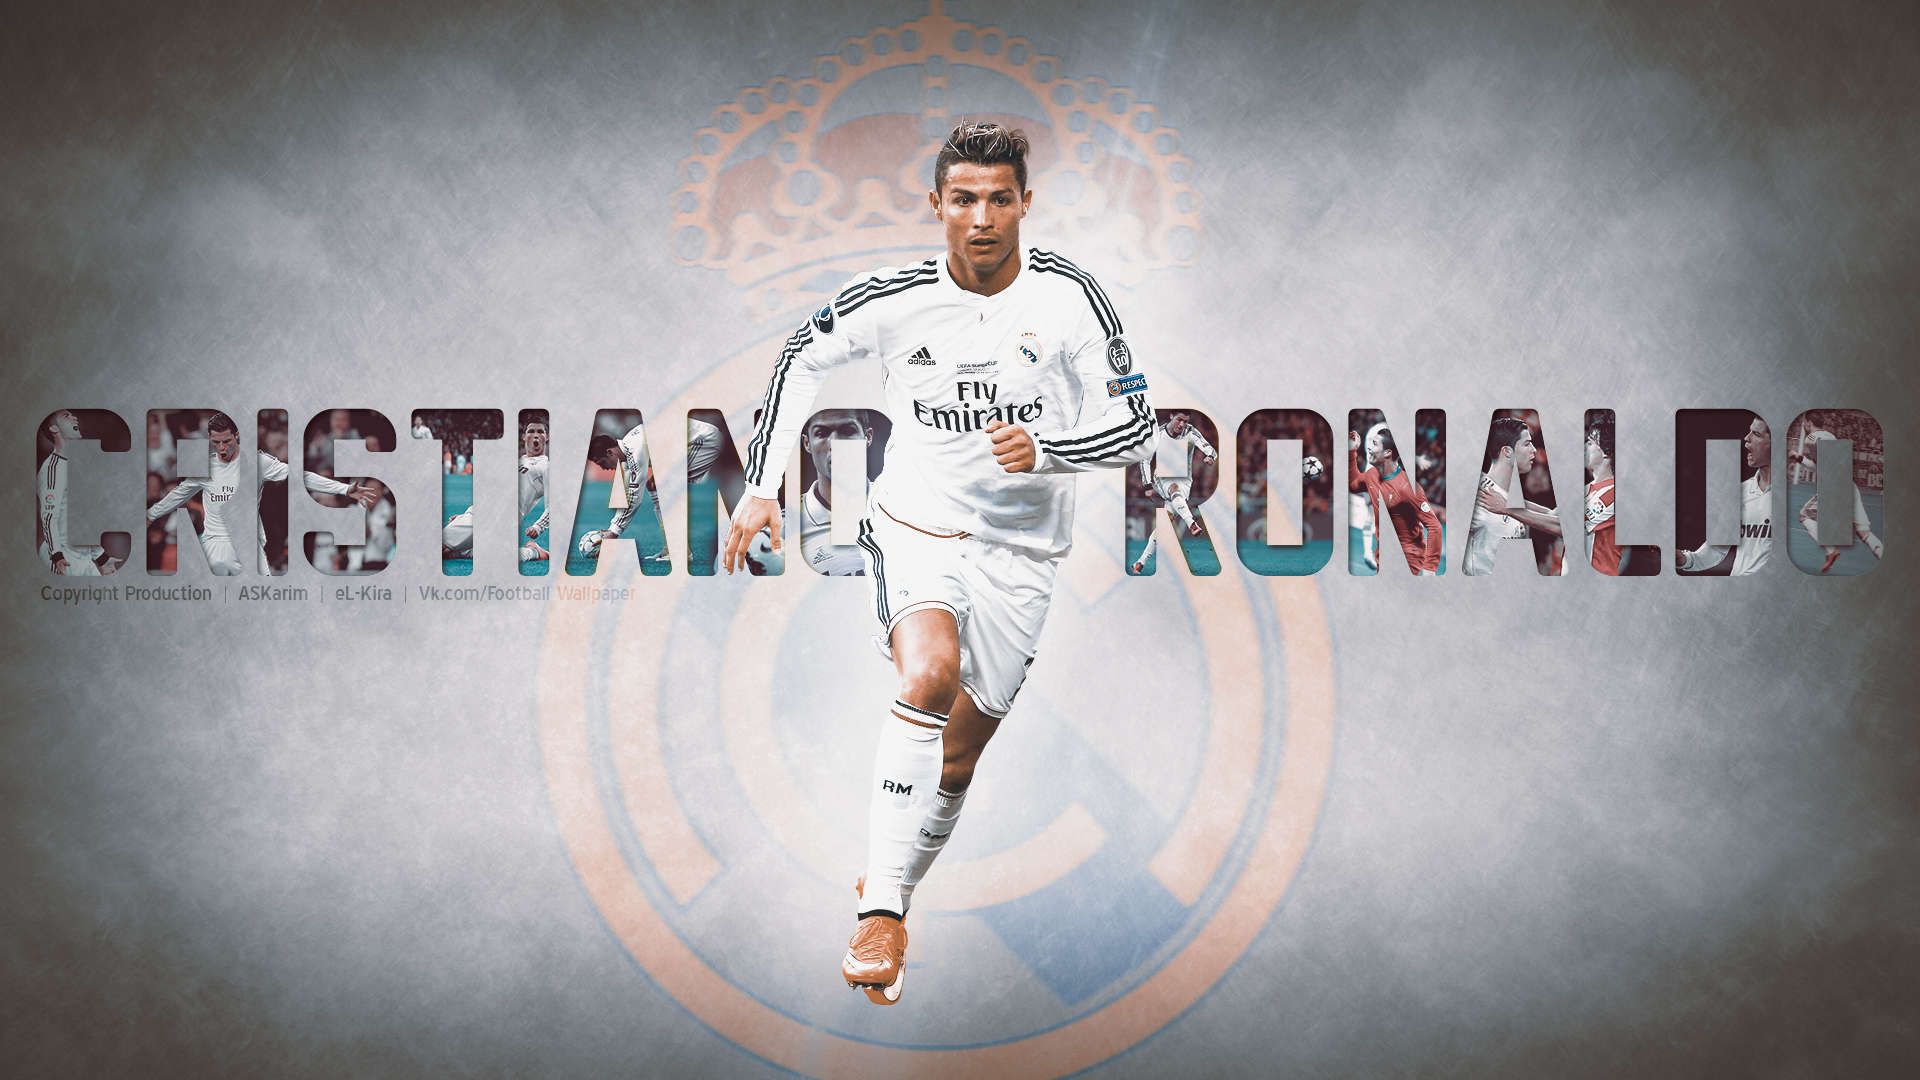 Free download Cristiano Ronaldo Wallpaper 2015 5 [1920x1080]